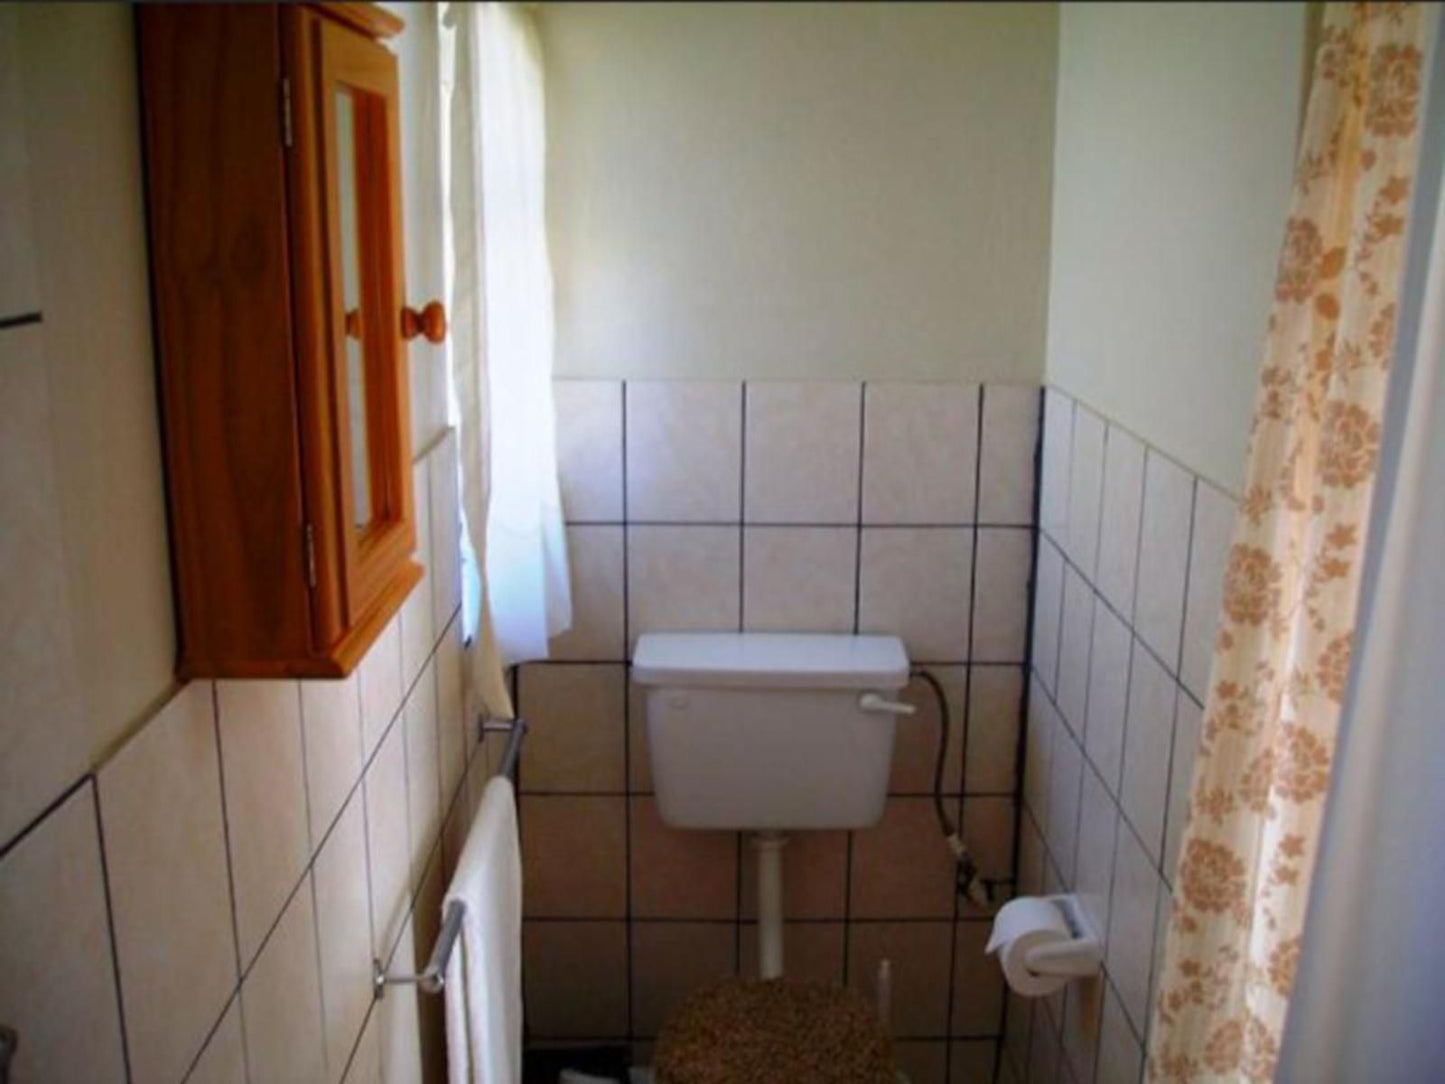 Ekhaya Nelspruit Guest House West Acres Nelspruit Mpumalanga South Africa Bathroom